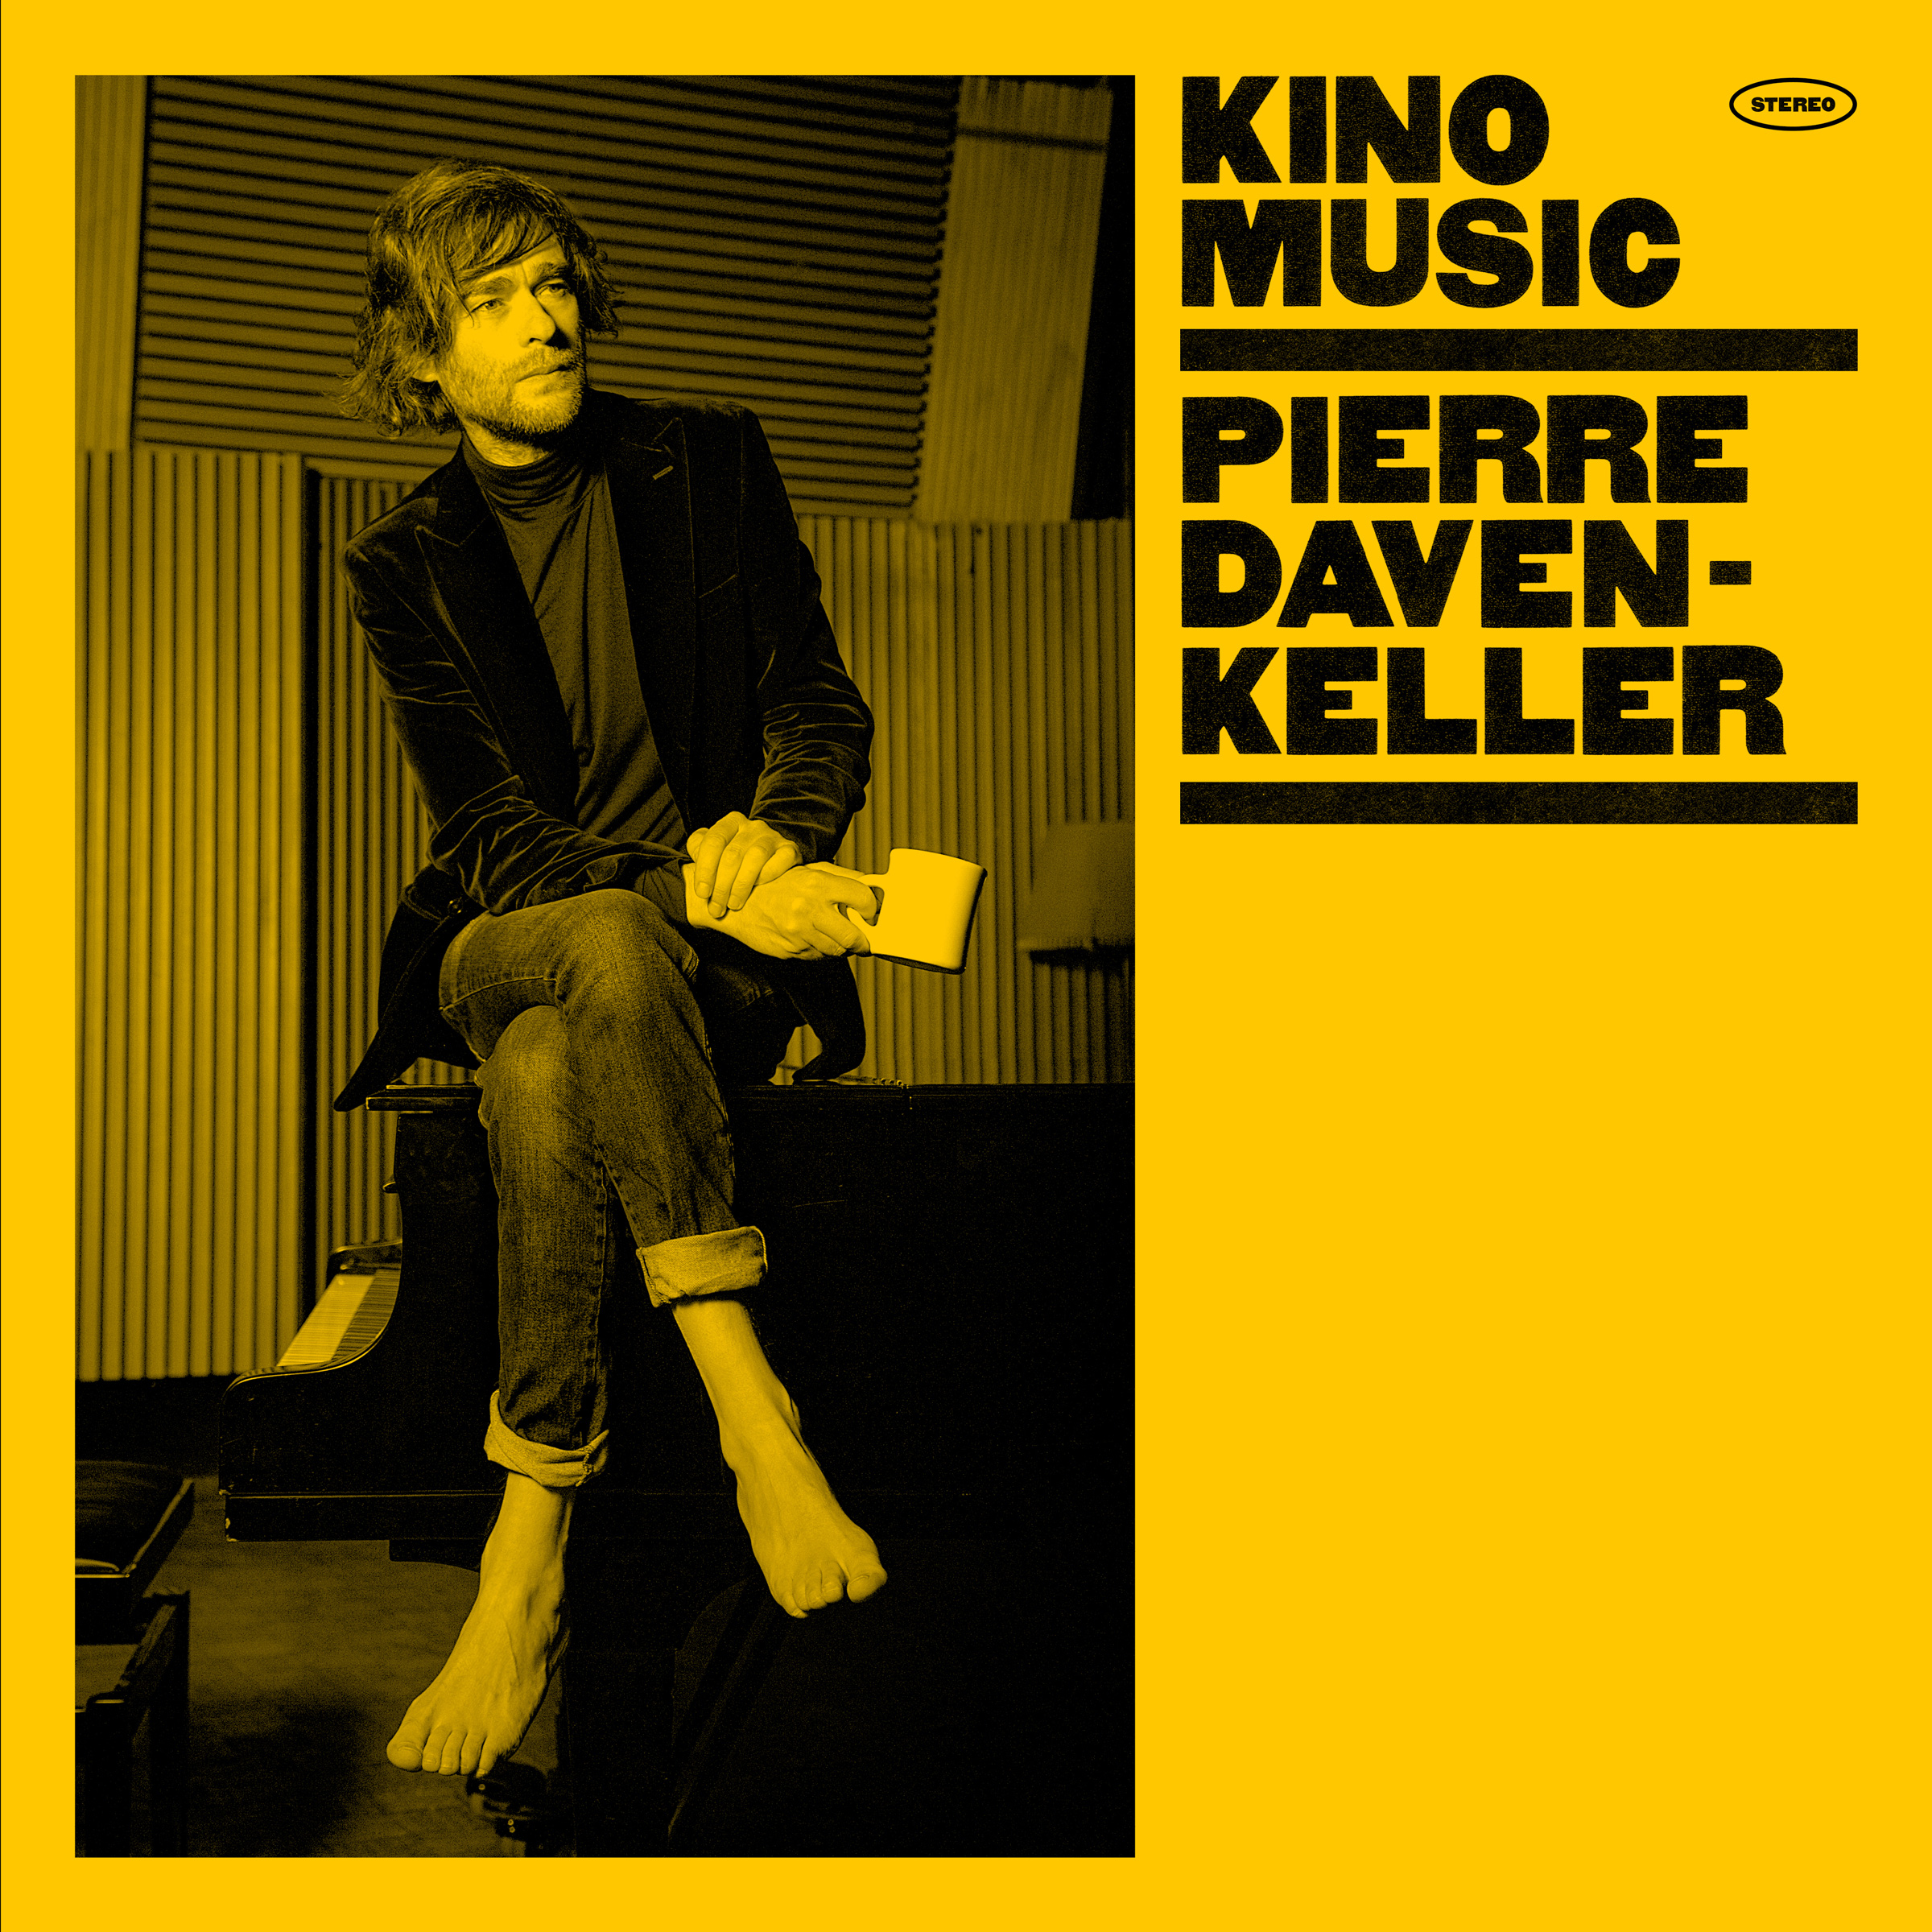 Pierre Daven-Keller sort Kino Music, bande son parfaite d’un film imaginaire